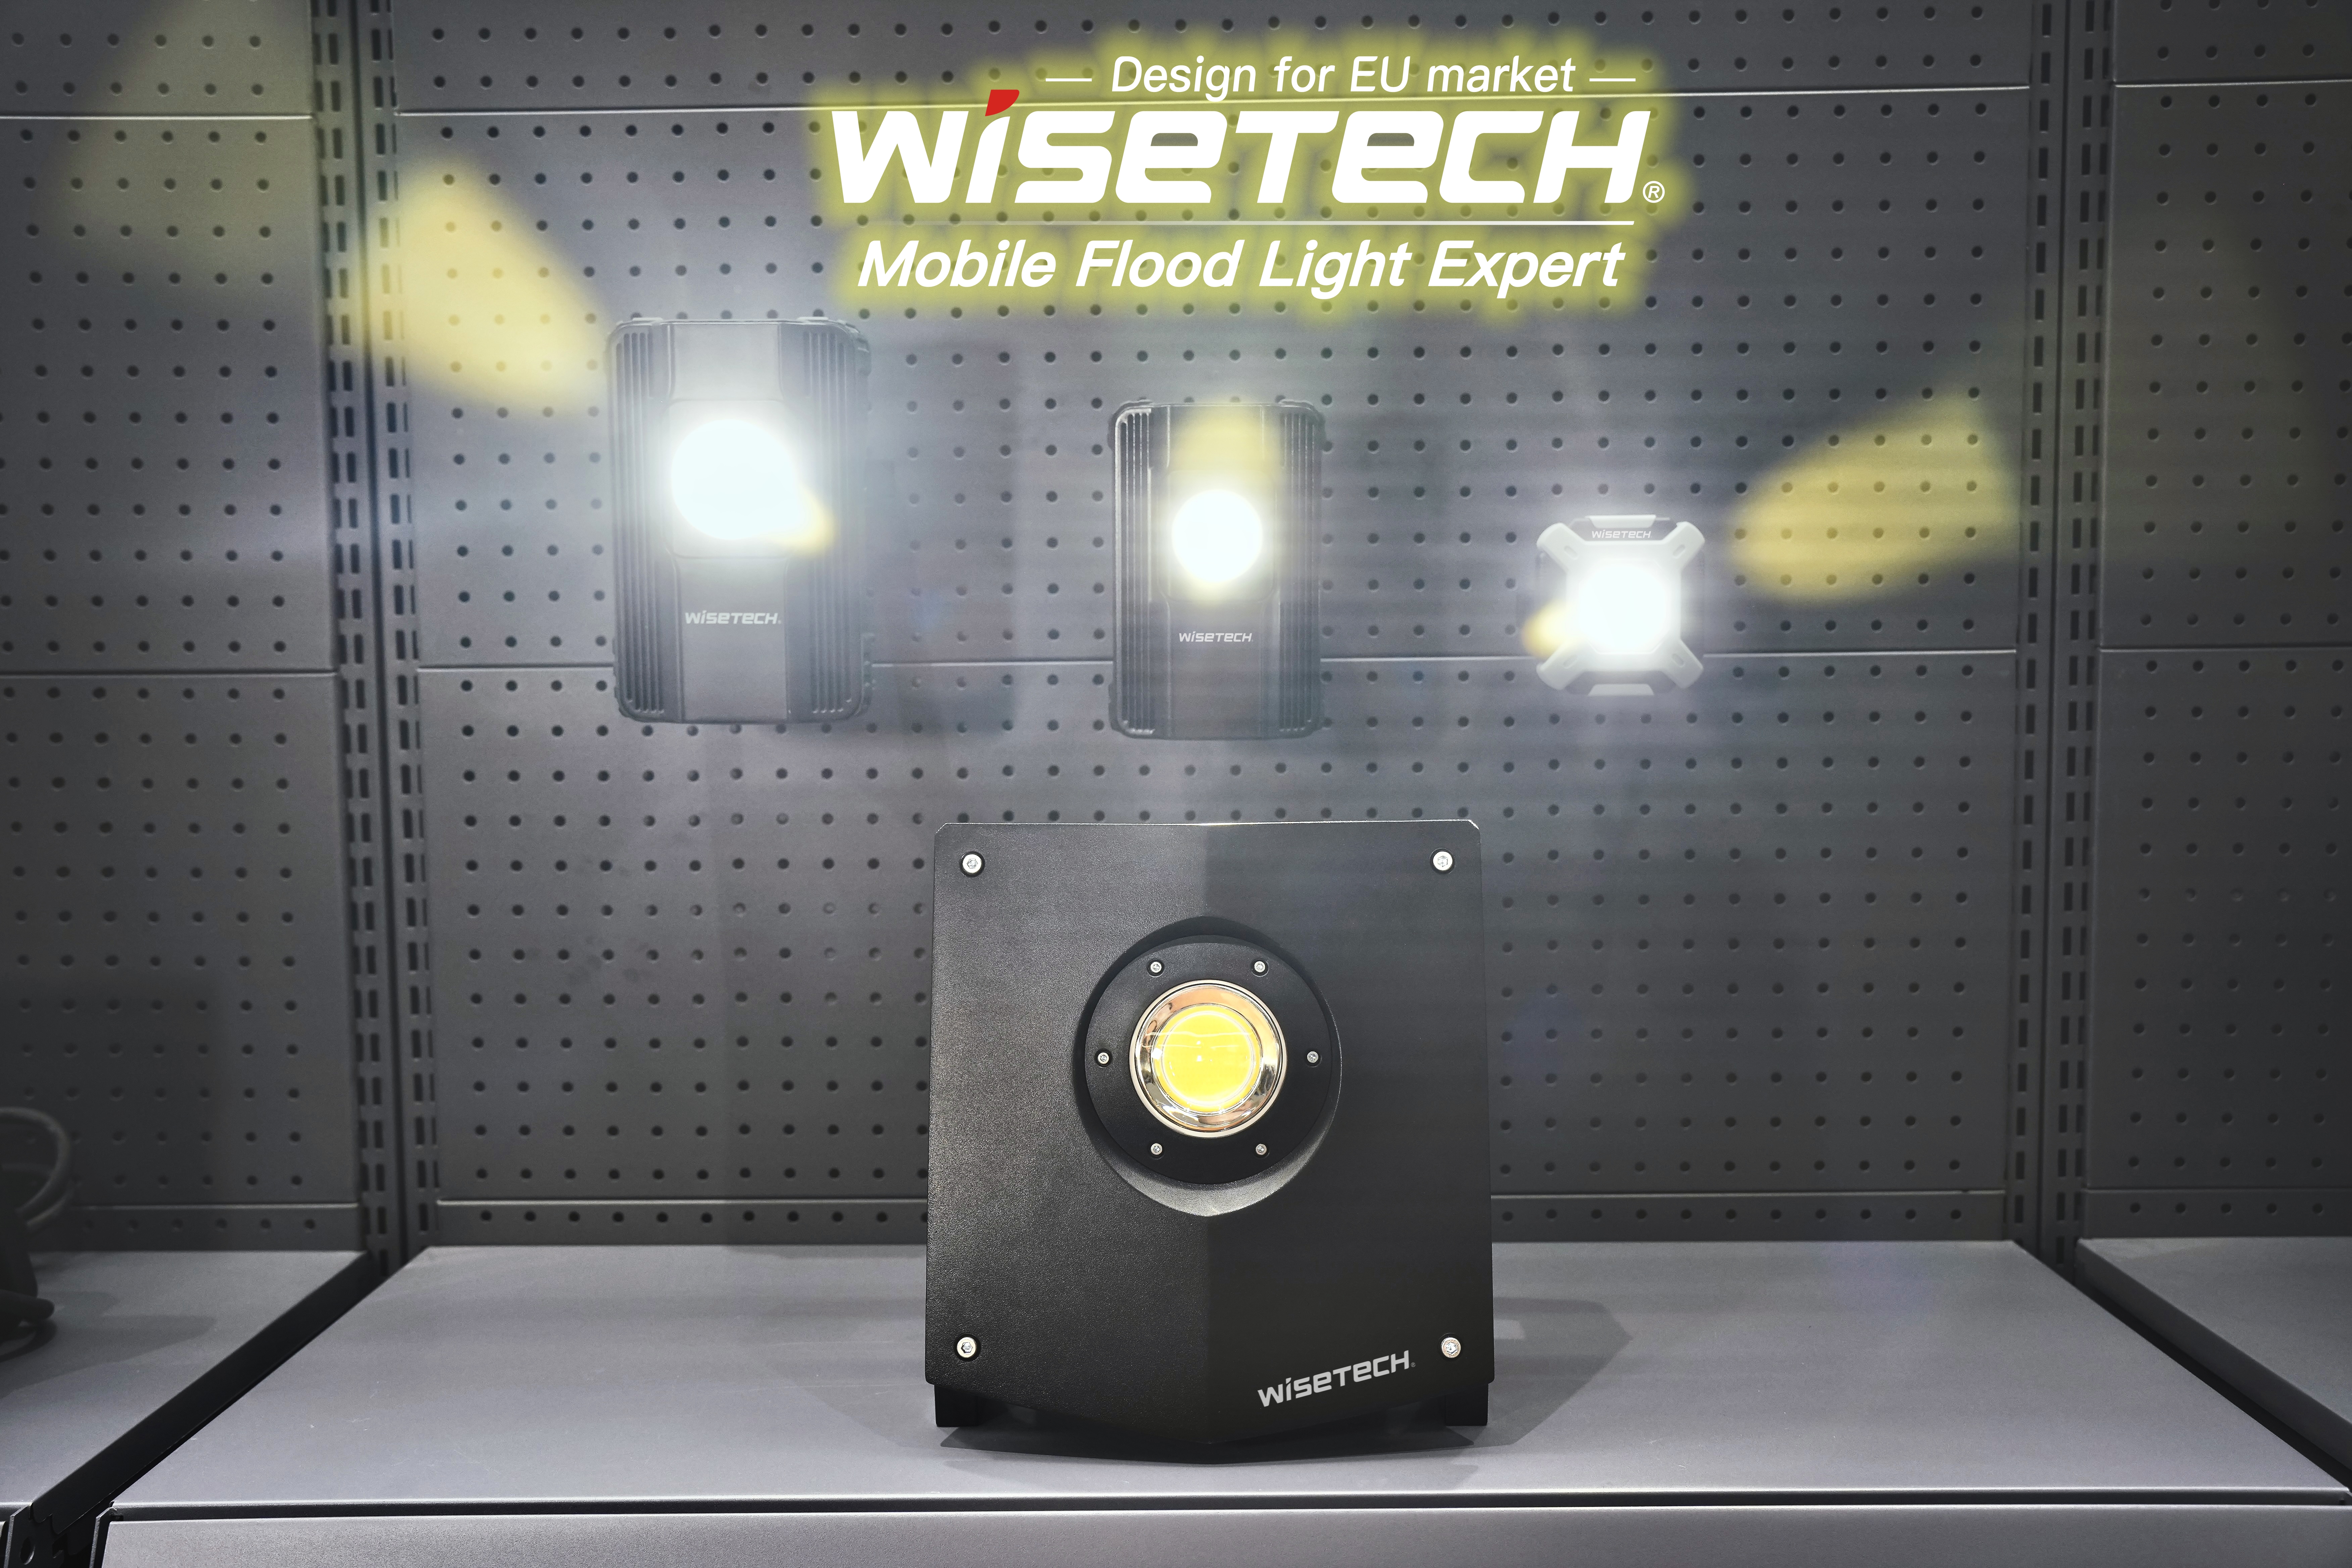 Mobilna delovna svetilka z izmenljivim orodjem 18 V, ki se napaja z baterijami in je prejela nagrado za oblikovanje na WISETECH